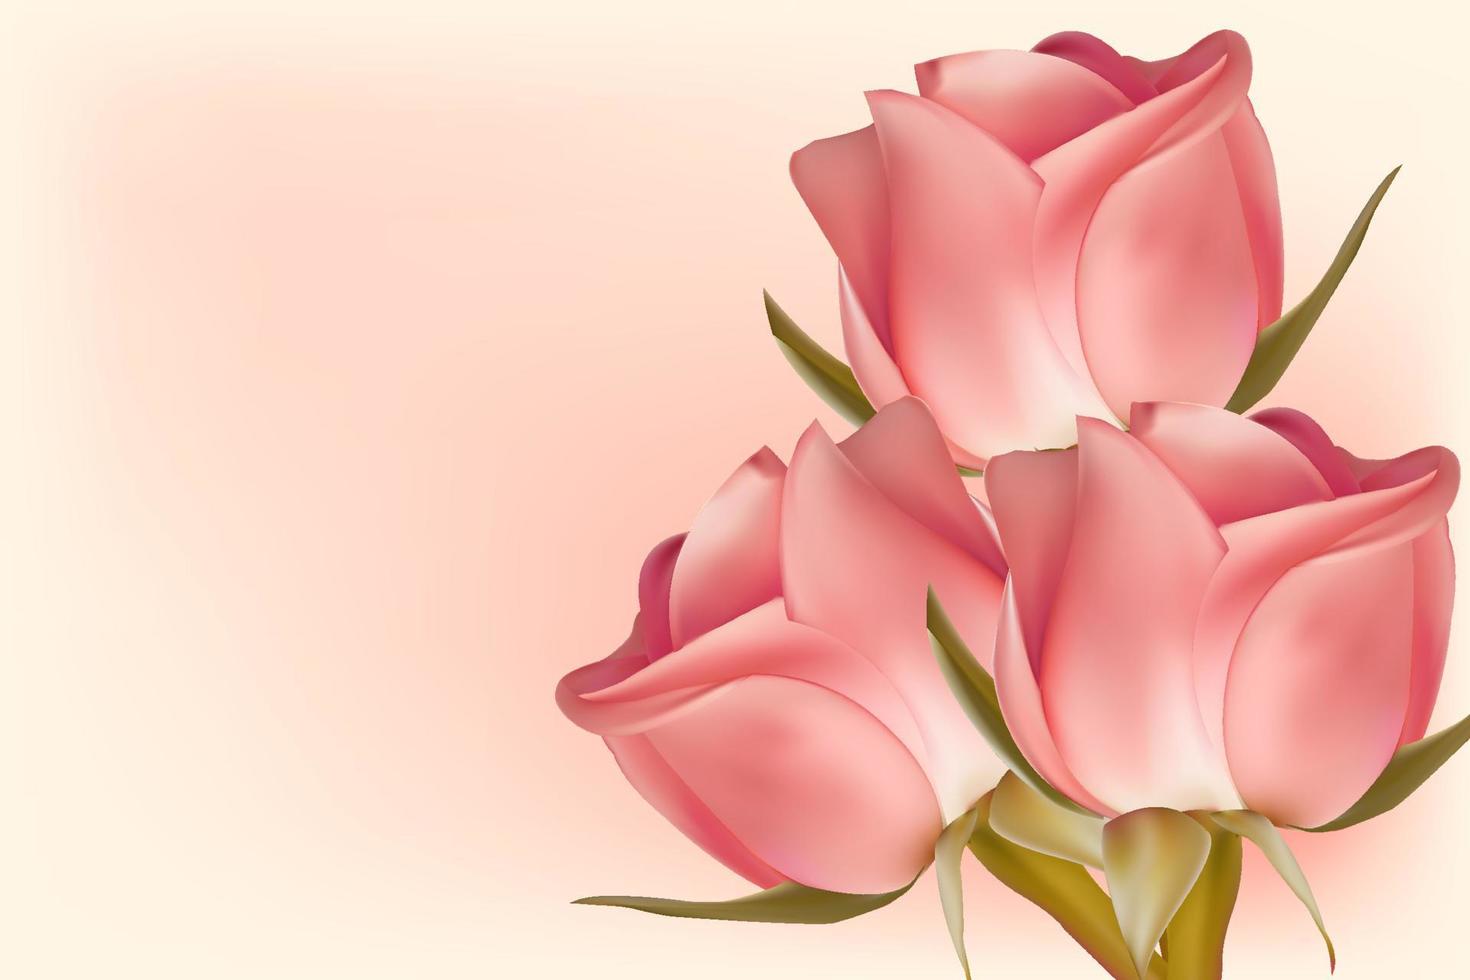 tres rosas rosas sobre un fondo claro con espacio para copiar. concepto para el día de san valentín, cumpleaños, día de la madre, día de la mujer. fondo universal de vacaciones. imagen vectorial vector